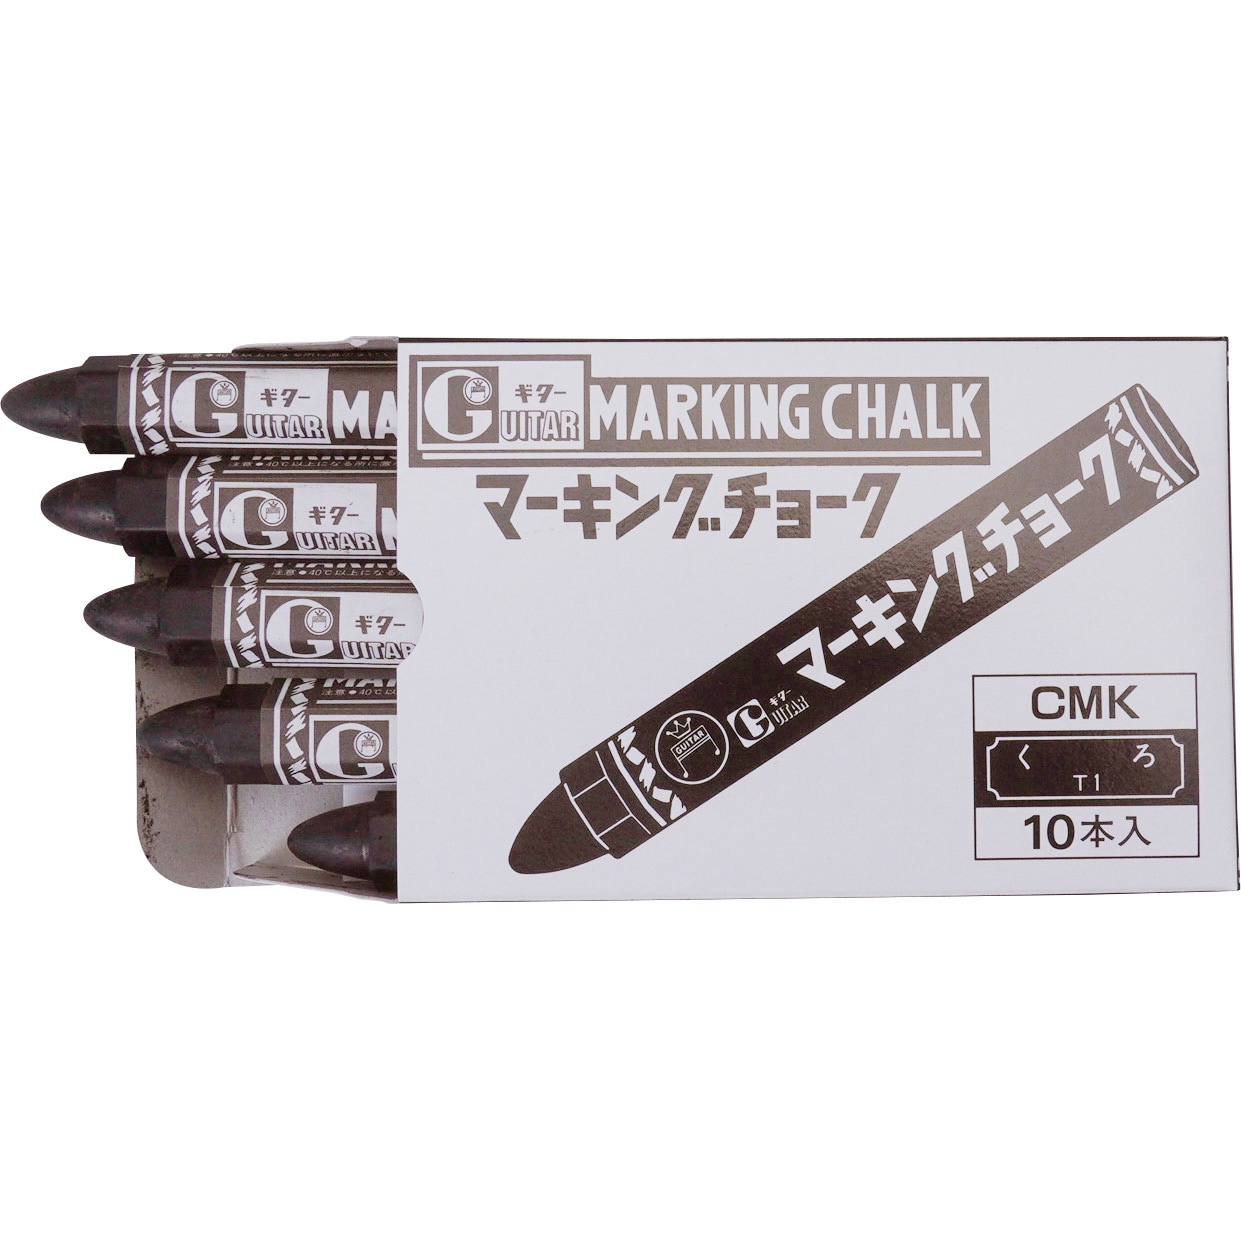 寺西化学 マーキングチョーク CMK-T1 黒 10本入り - 計測、検査